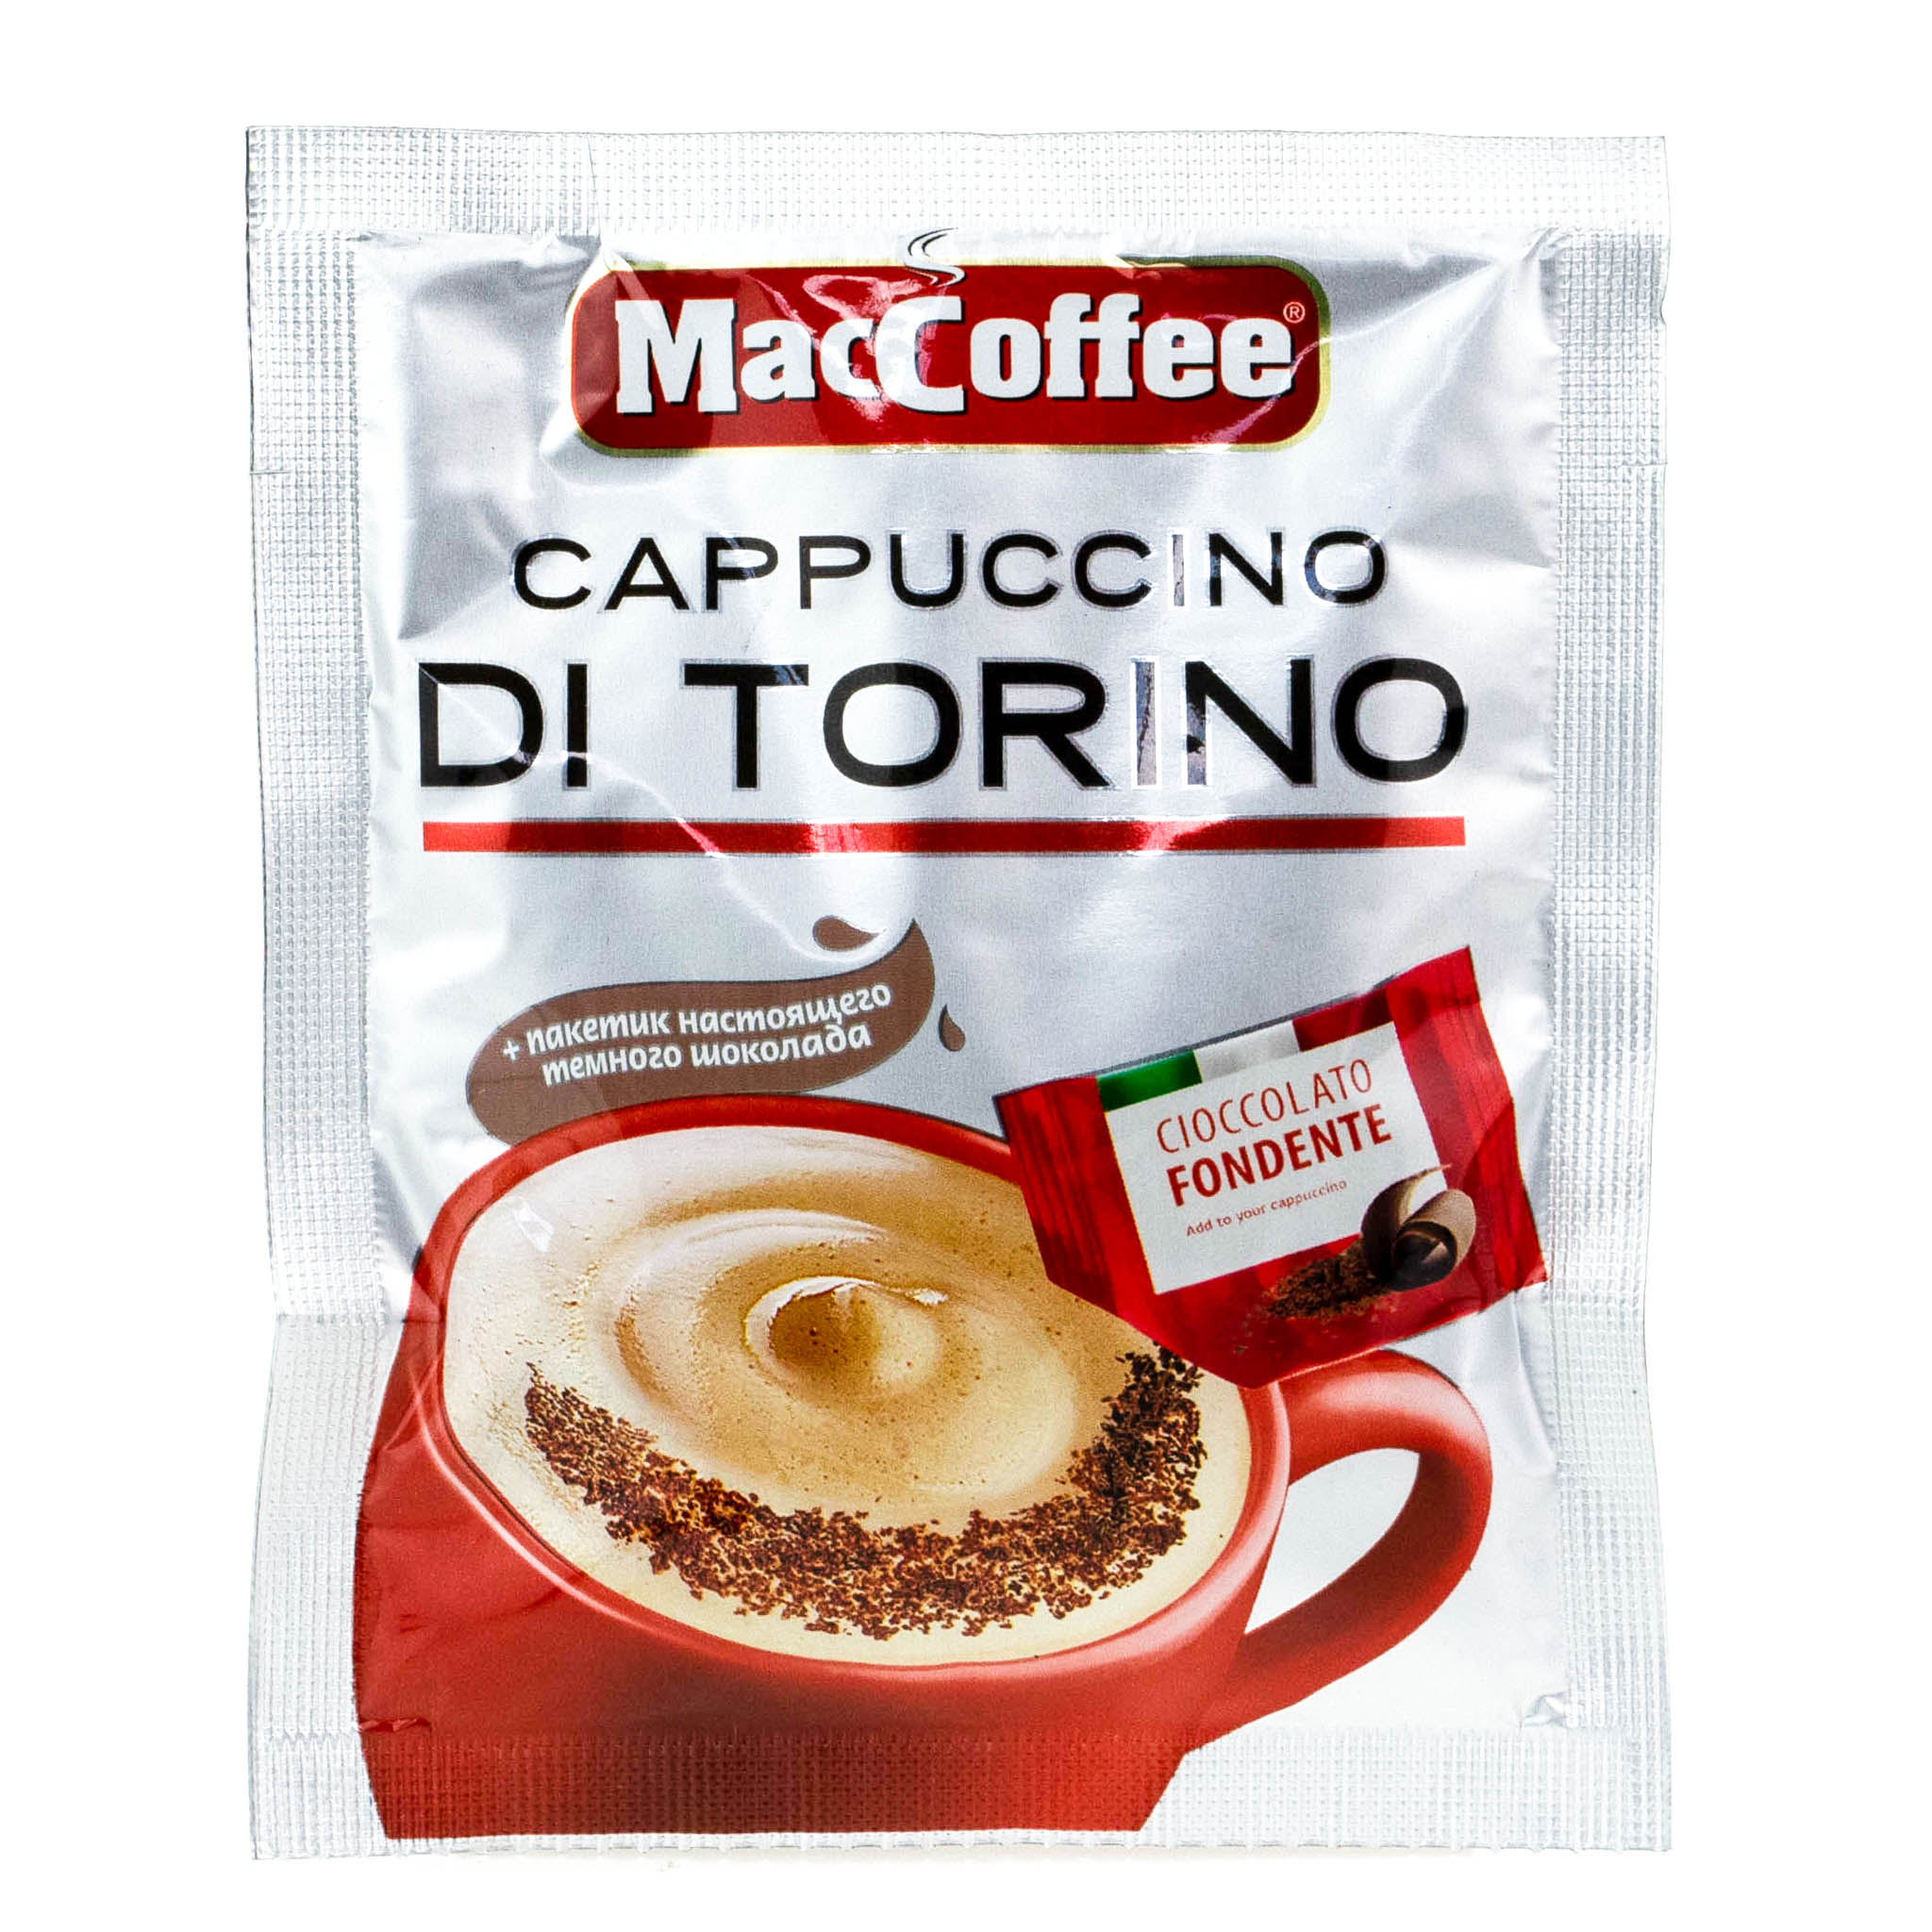 Купить готовый кофе. Кофе 3 в 1 Маккофе. Кофе 3 в 1 Маккофе капучино. Маккофе 3 в 1 капучино di Torino. Растворимый кофе MACCOFFEE Cappuccino.